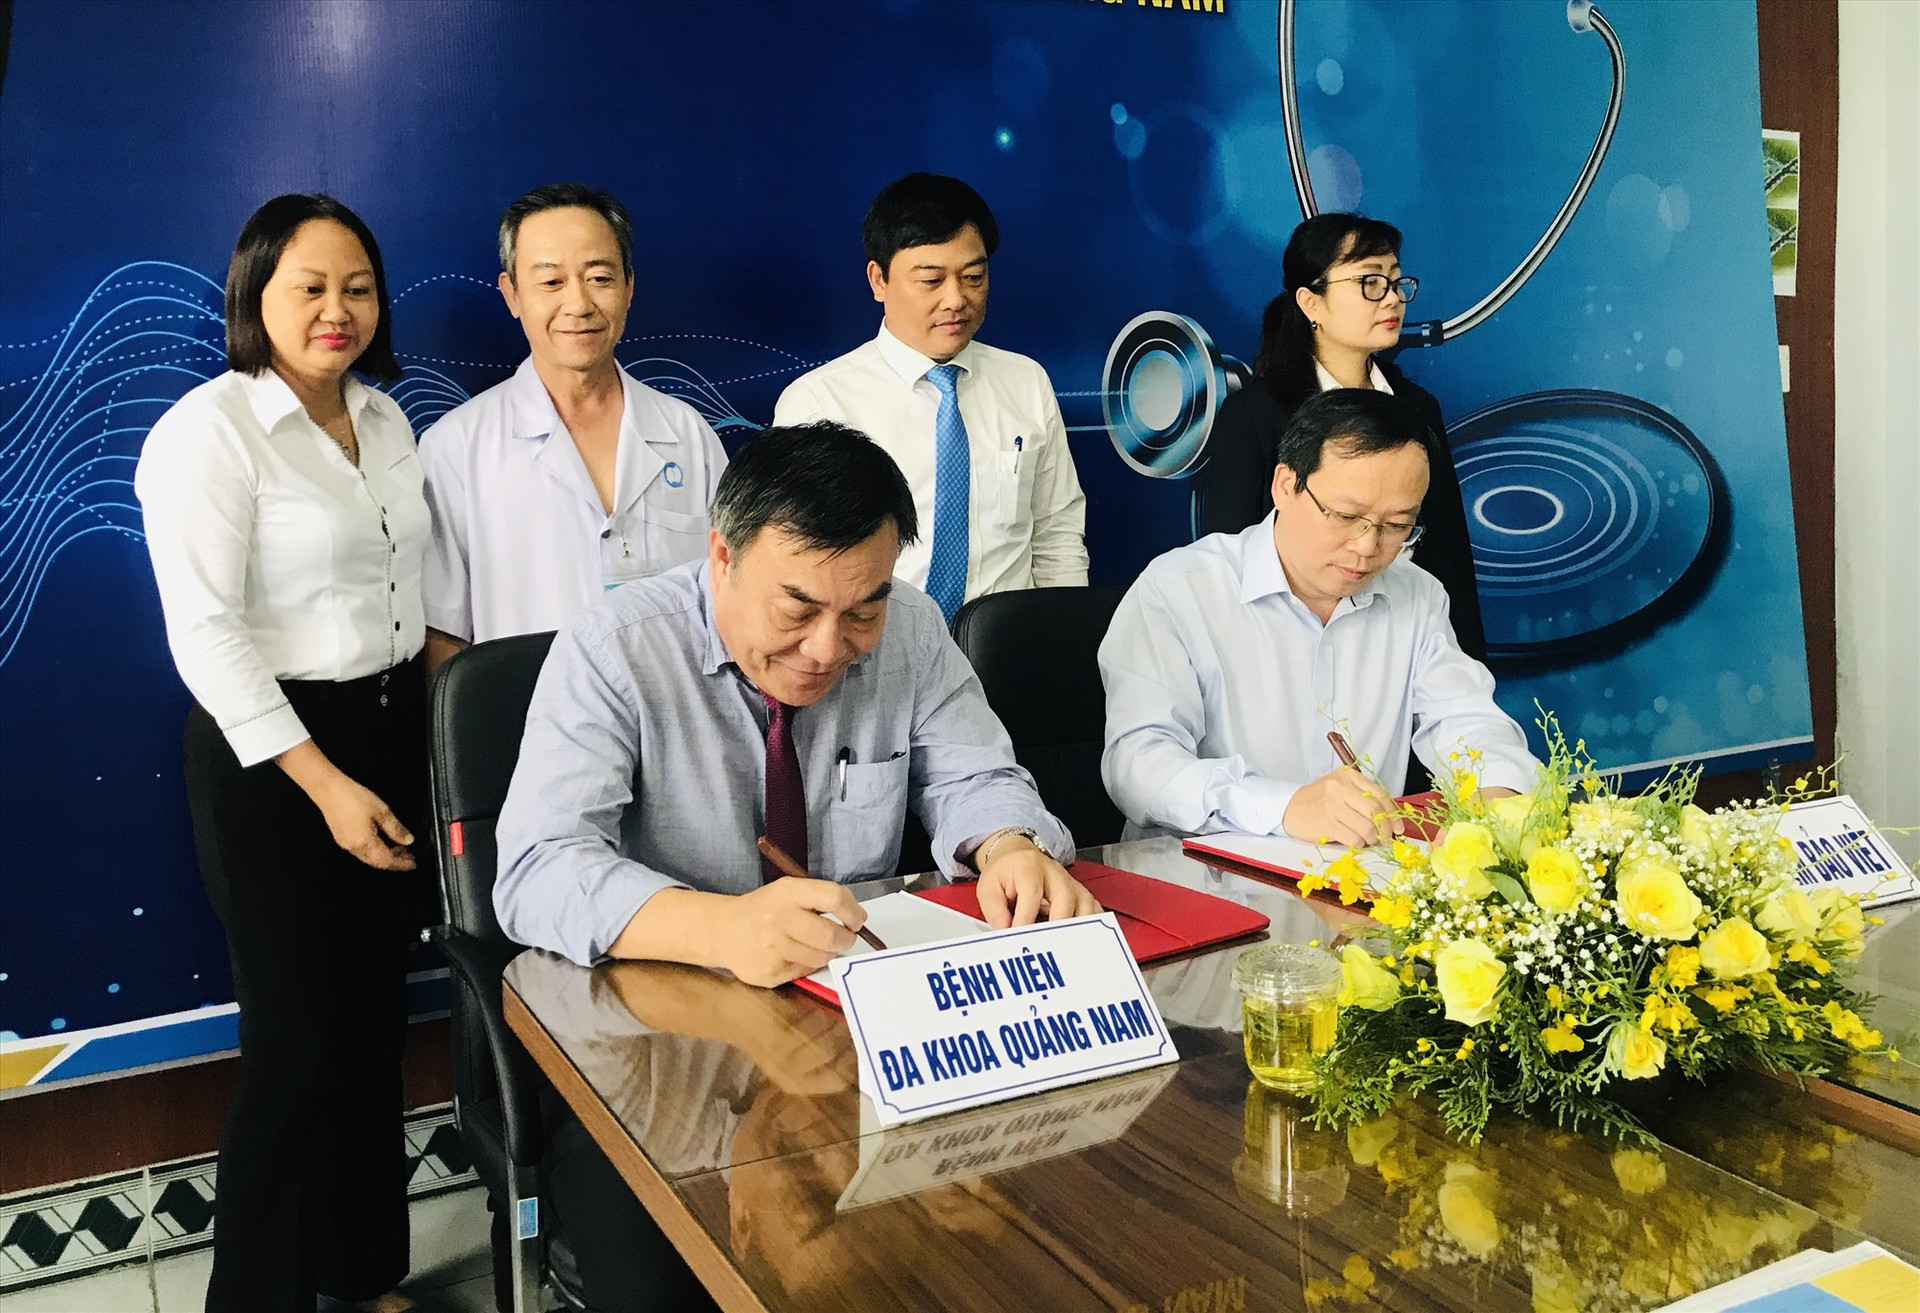 Tổng Công ty Bảo hiểm Bảo Việt và Bệnh viện Đa khoa Quảng Nam ký kết hợp tác bảo lãnh viện phí. Ảnh: C.N